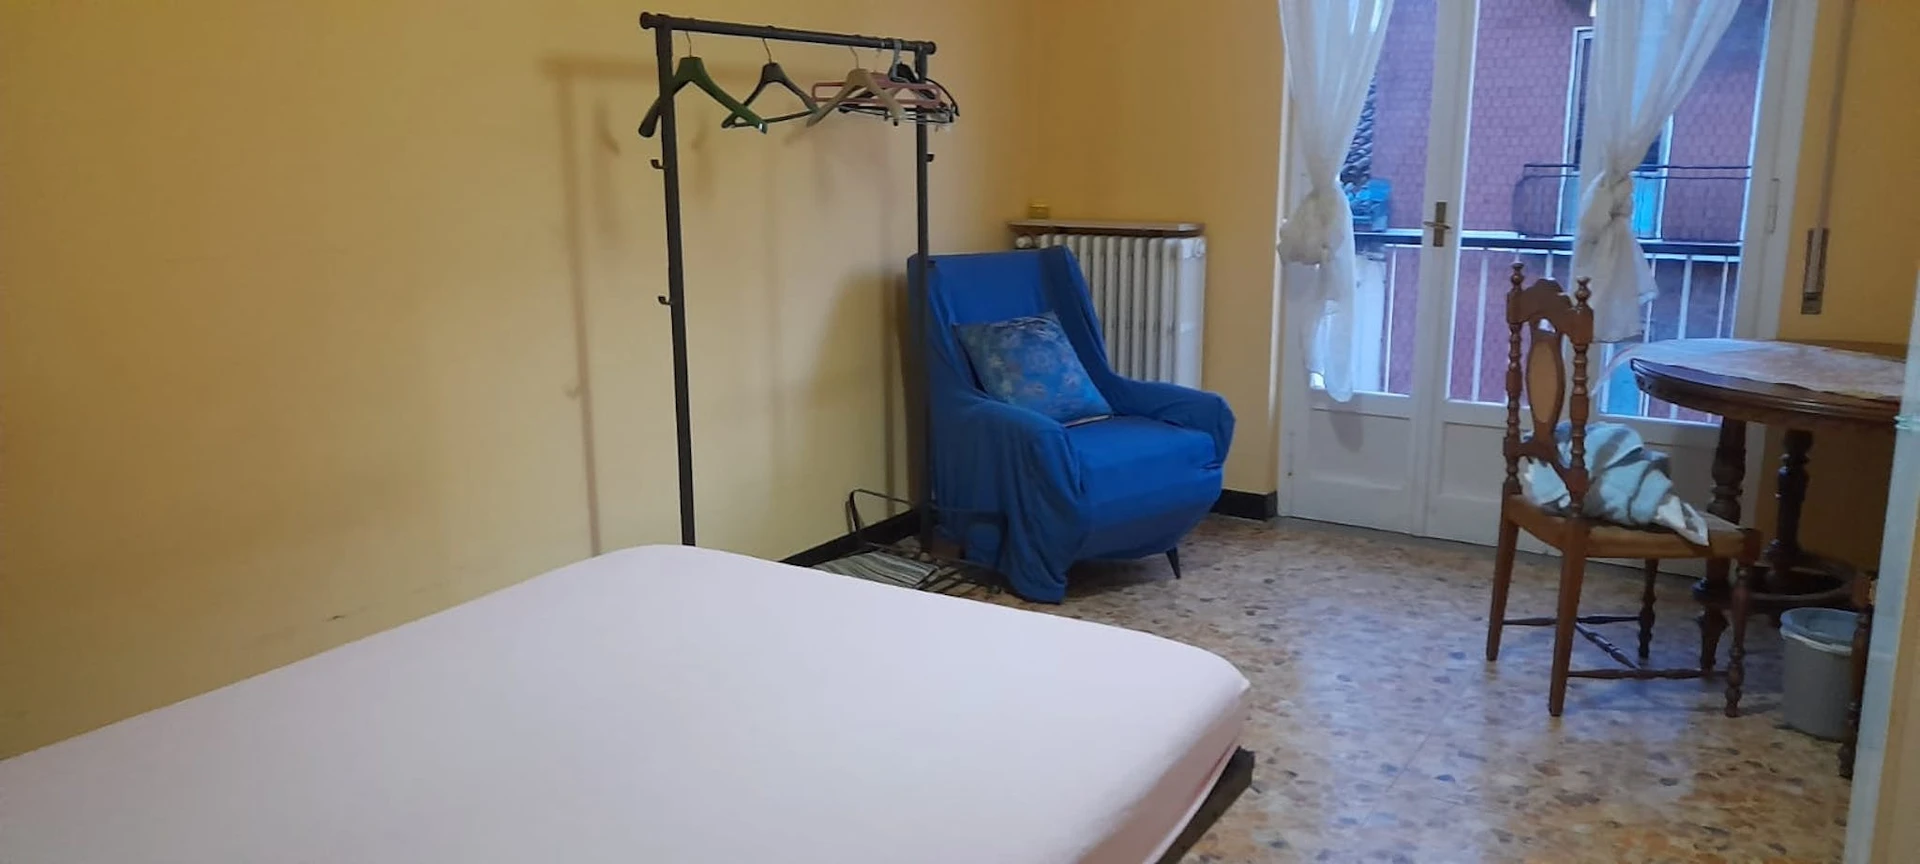 Zimmer zur Miete in einer WG in Piacenza